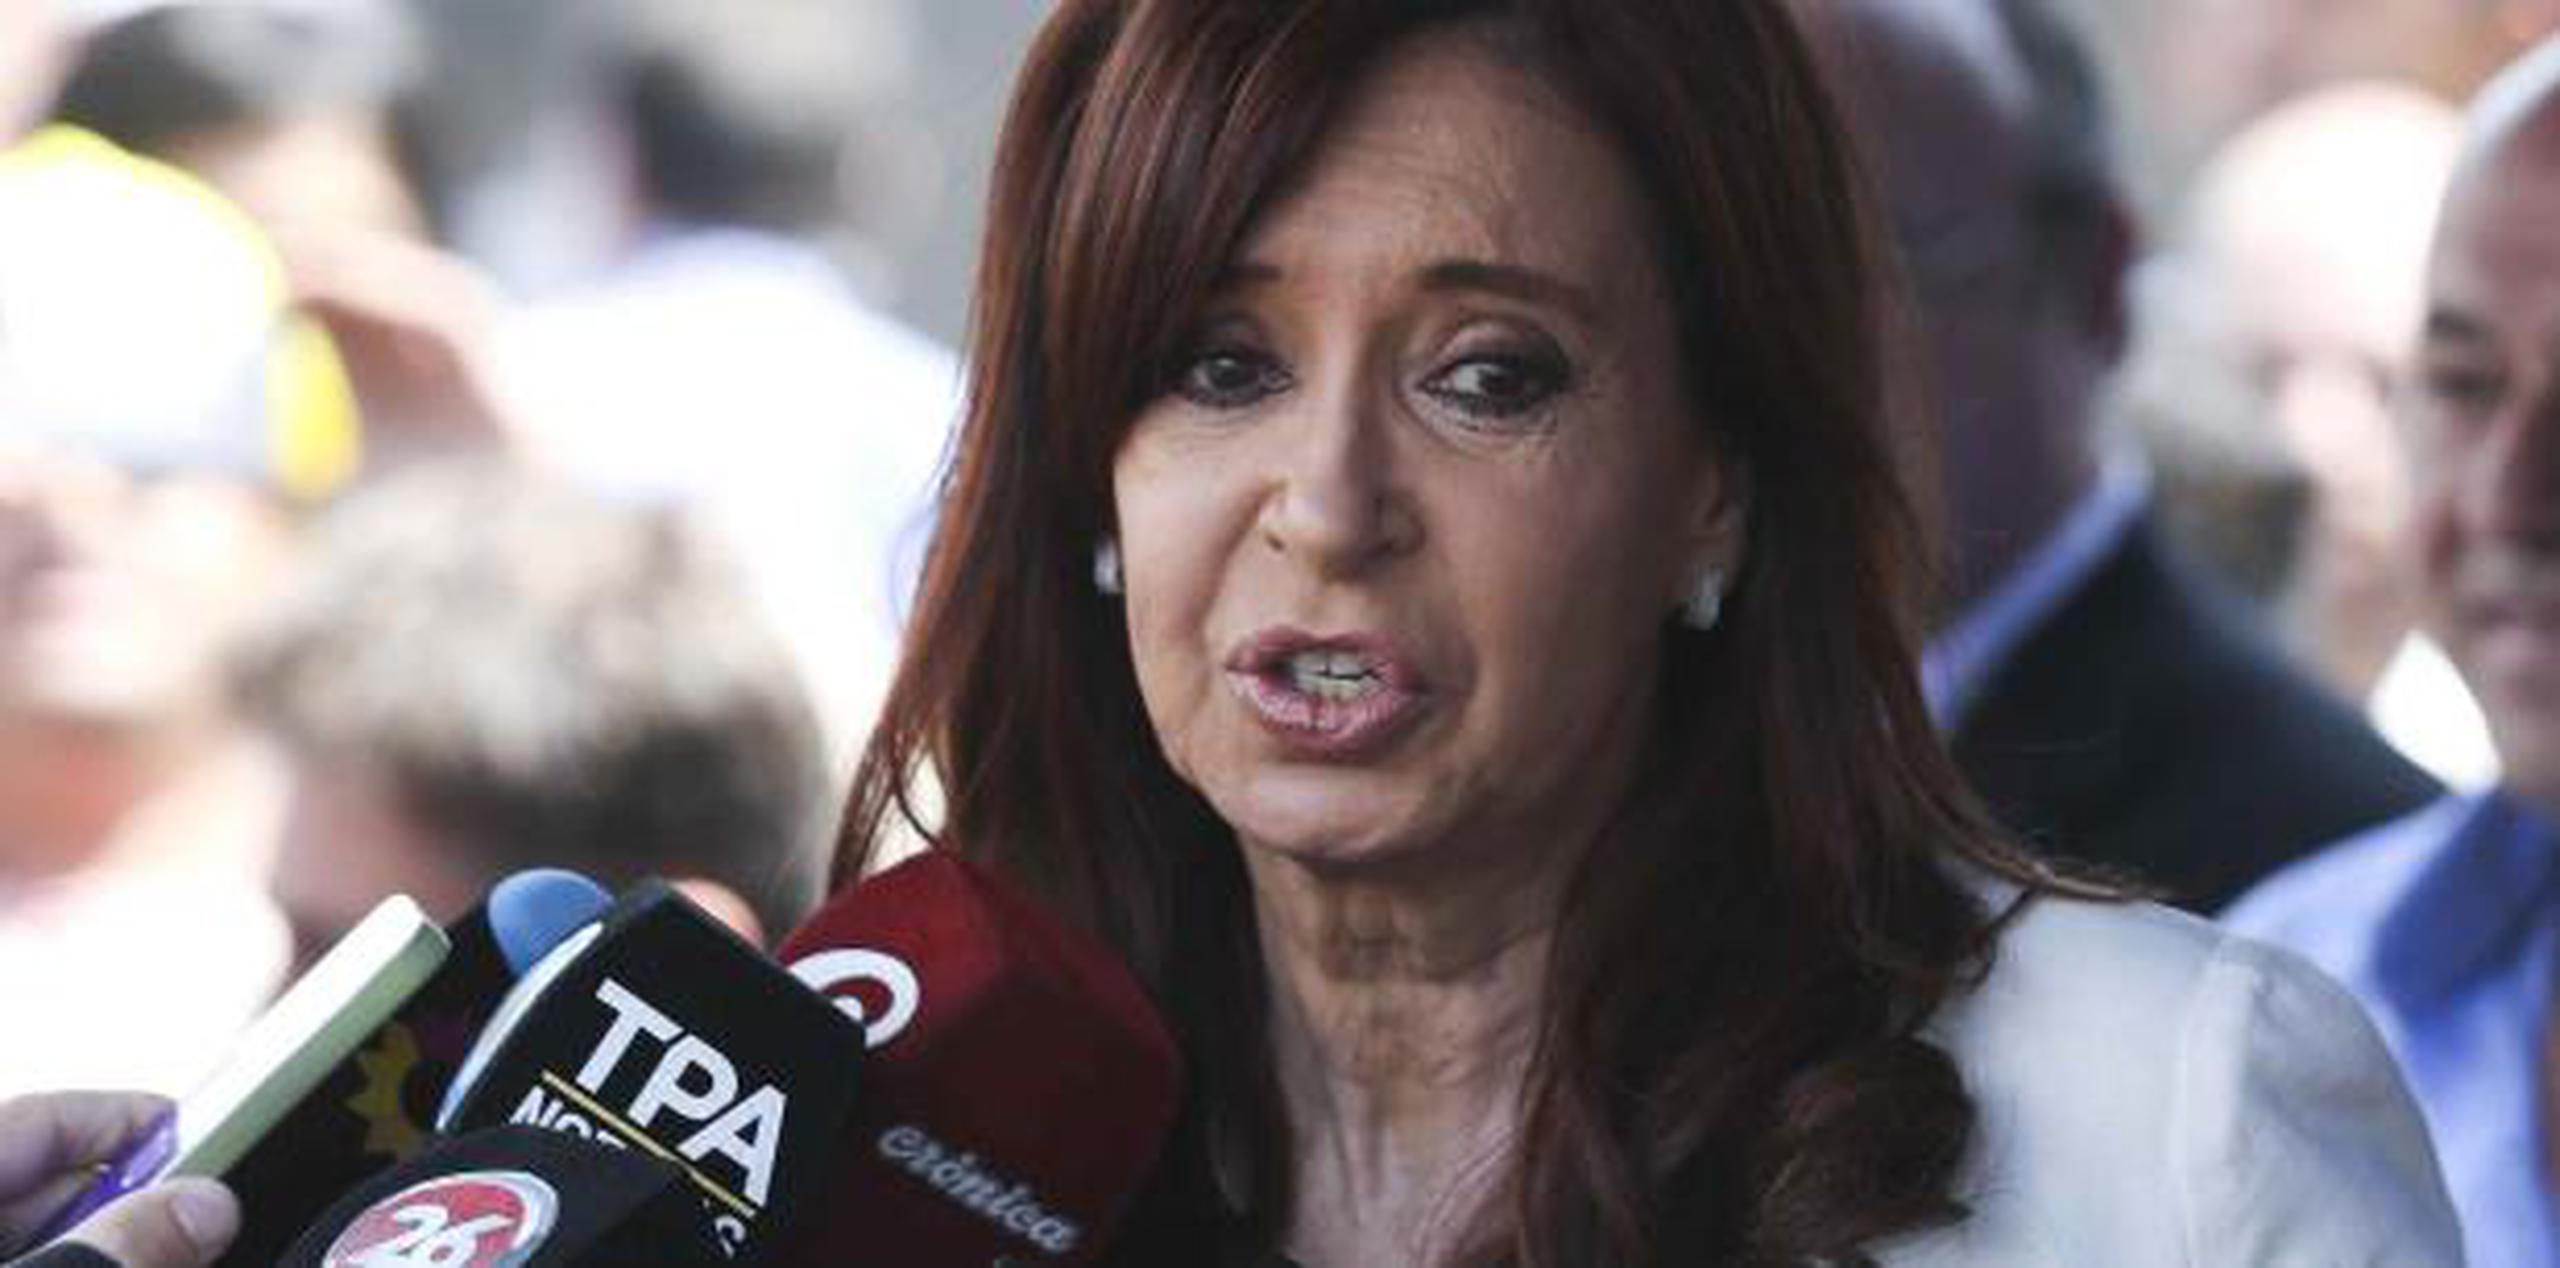 Fernández continúa siendo la dirigente opositora más popular y mejor perfilada para las elecciones generales de 2019. (AP)